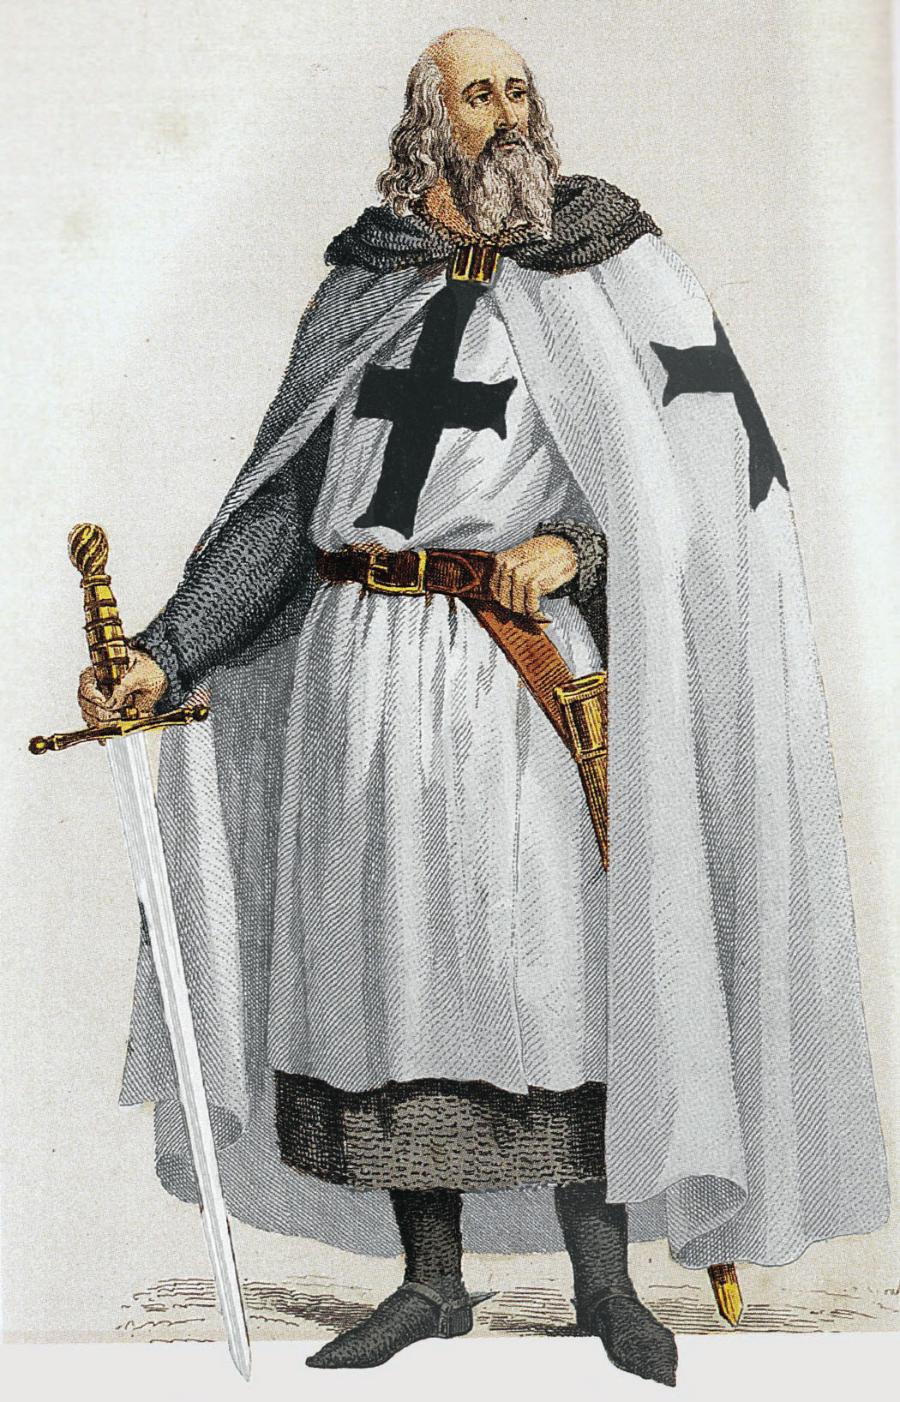 Jakub de Molay, wielki mistrz zakonu templariuszy, płonąc na stosie, rzucił klątwę na papieża Klemensa i króla Francji.